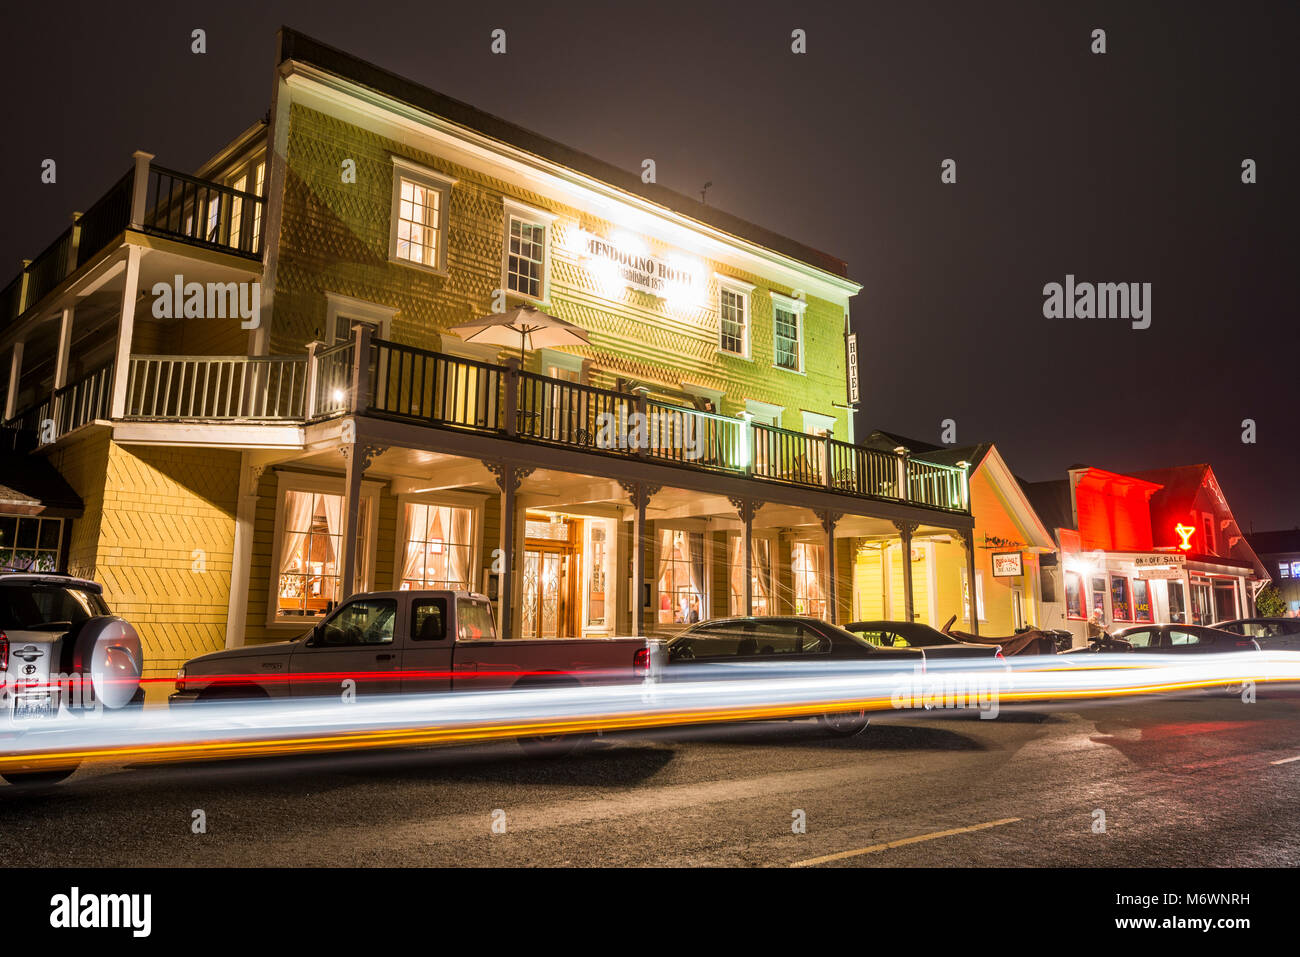 Der Mendocino Hotel bei Nacht in der historischen Innenstadt von Mendocino, Kalifornien. Stockfoto